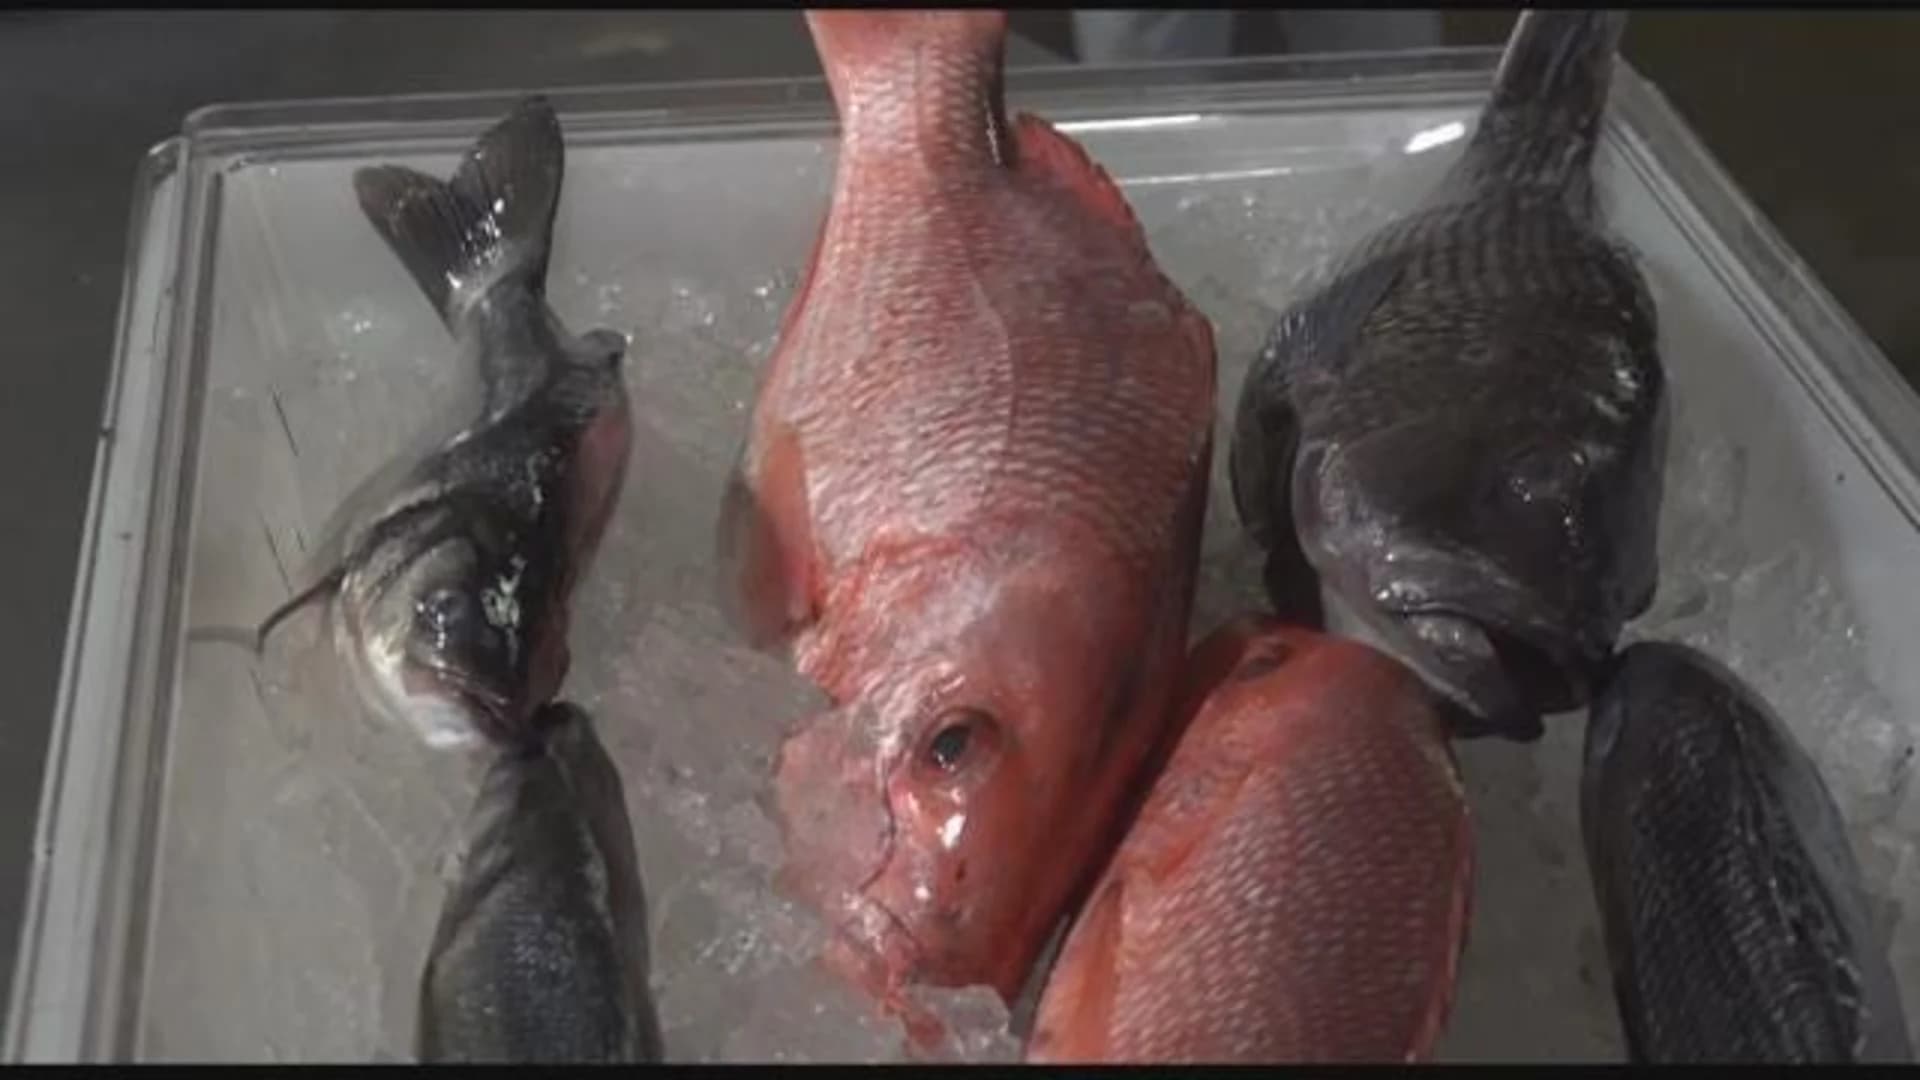 Fulton Fish Market, Jet.com partner for NYC deliveries